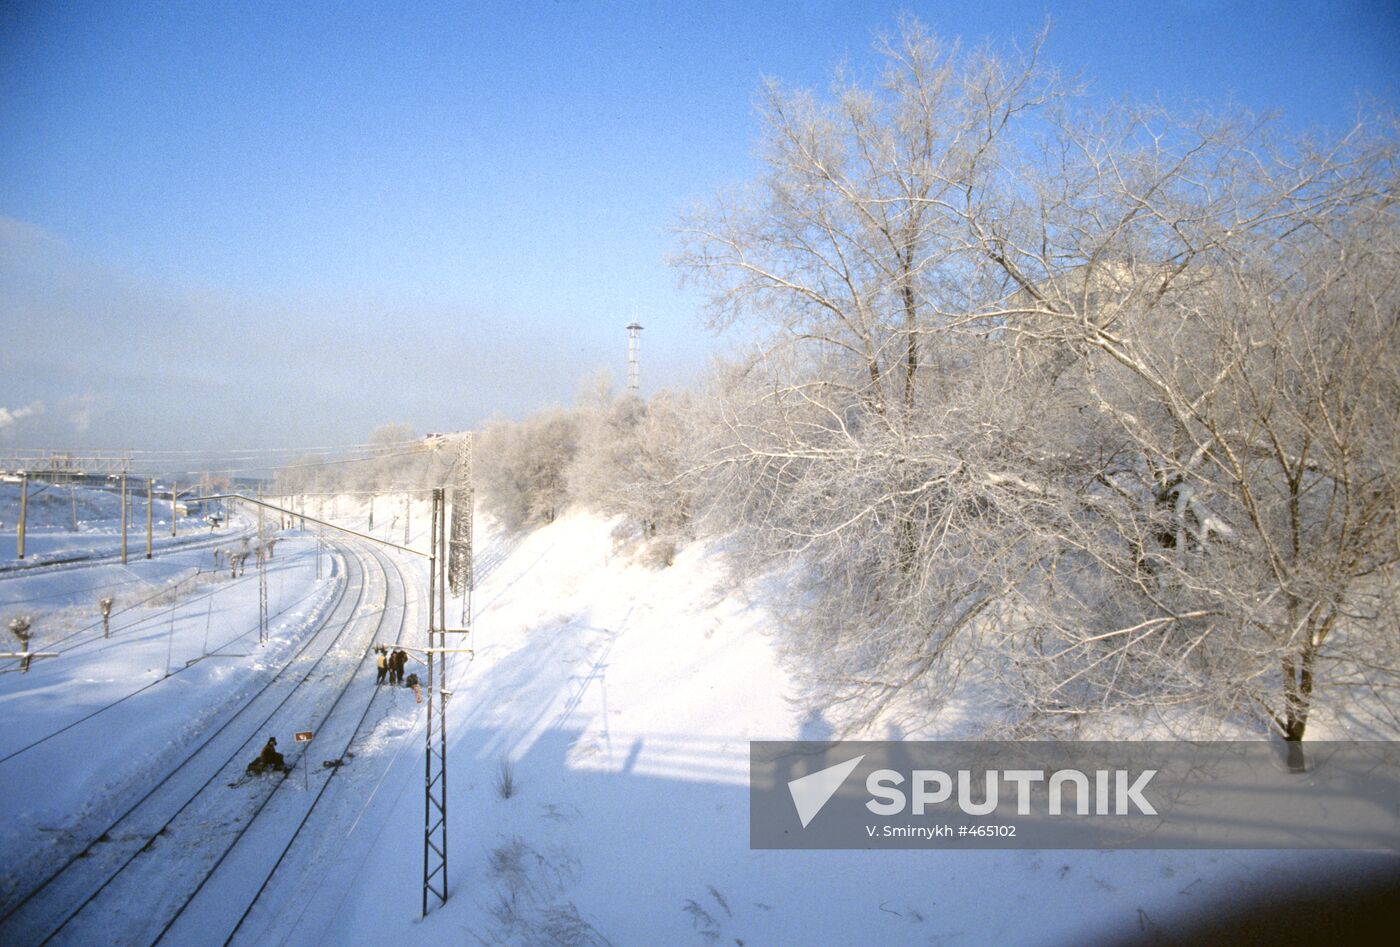 Transsib (Trans-Siberian Railway)